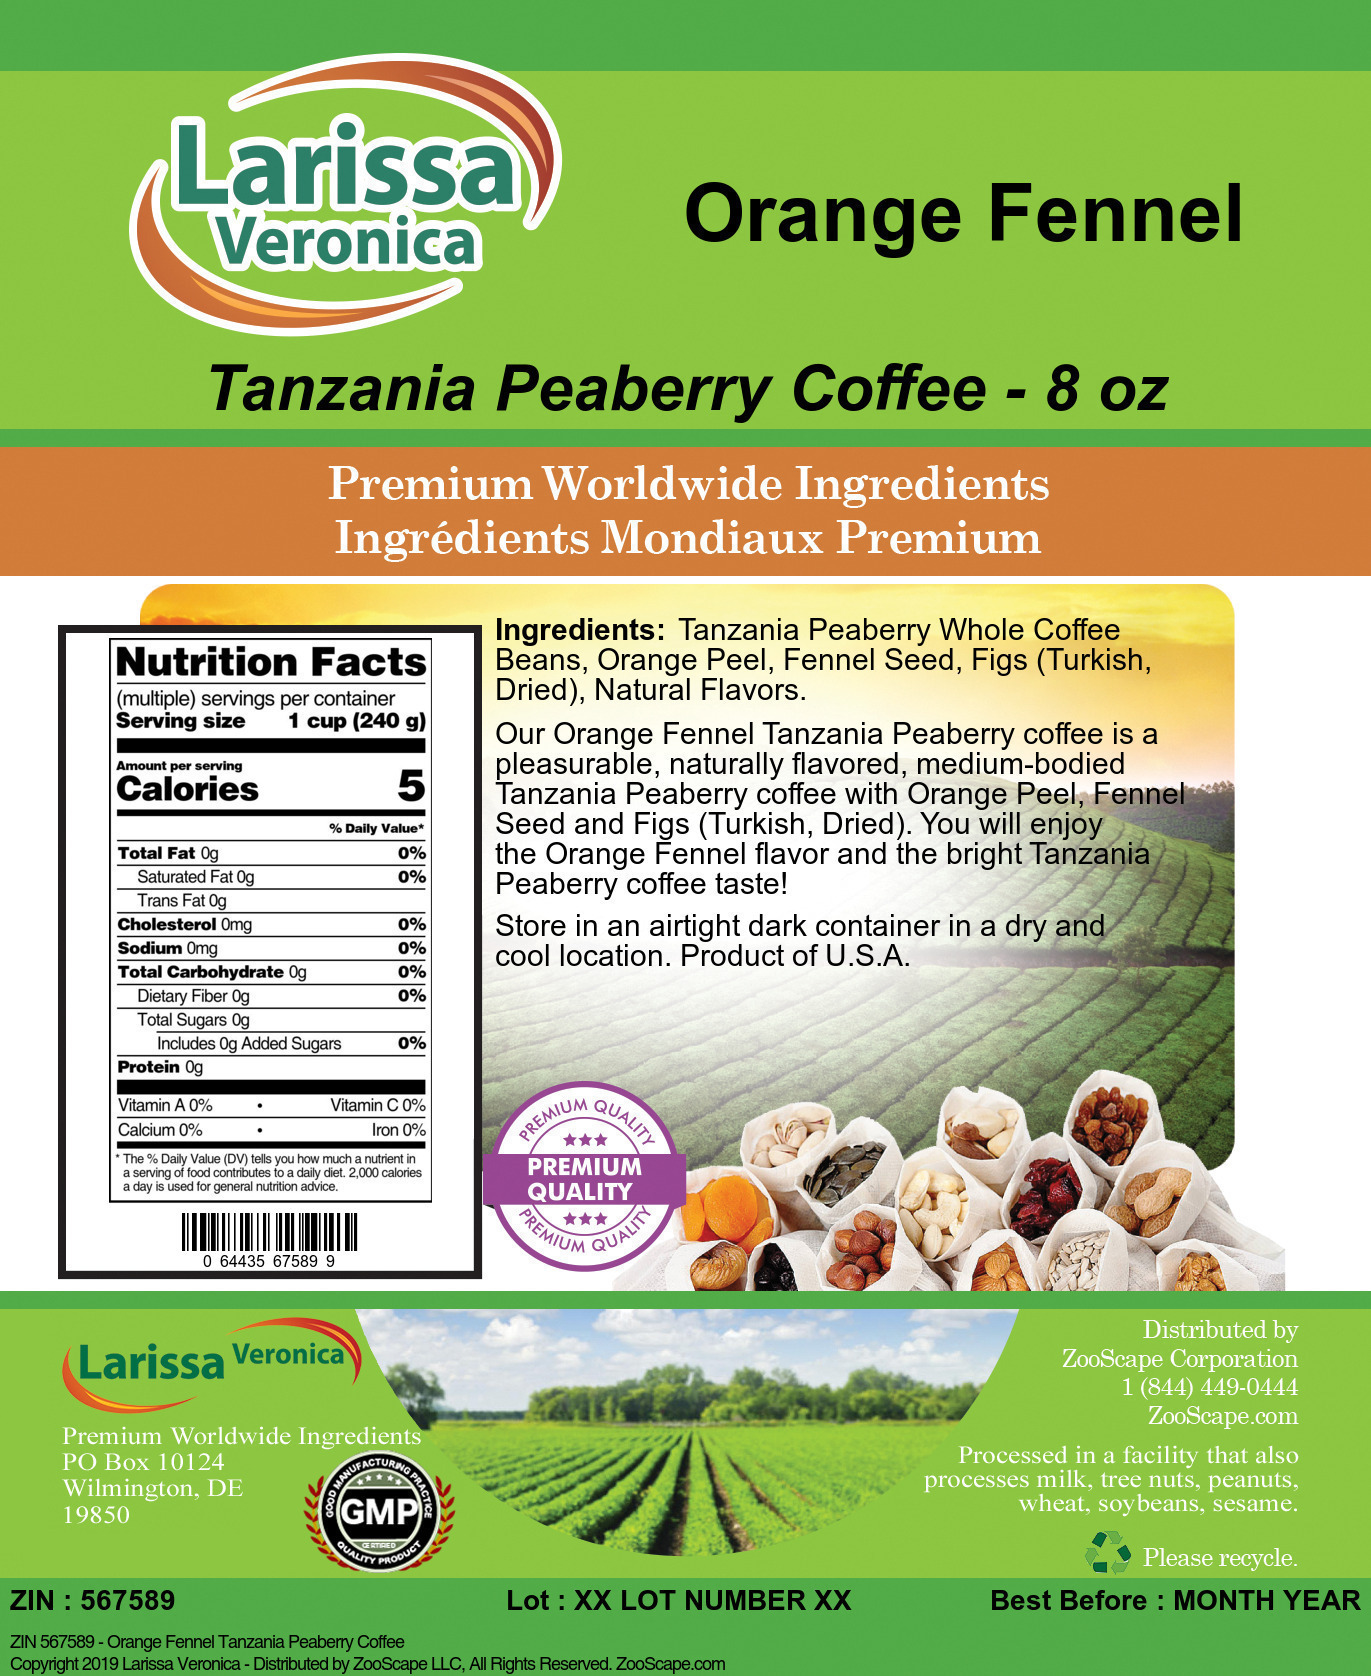 Orange Fennel Tanzania Peaberry Coffee - Label